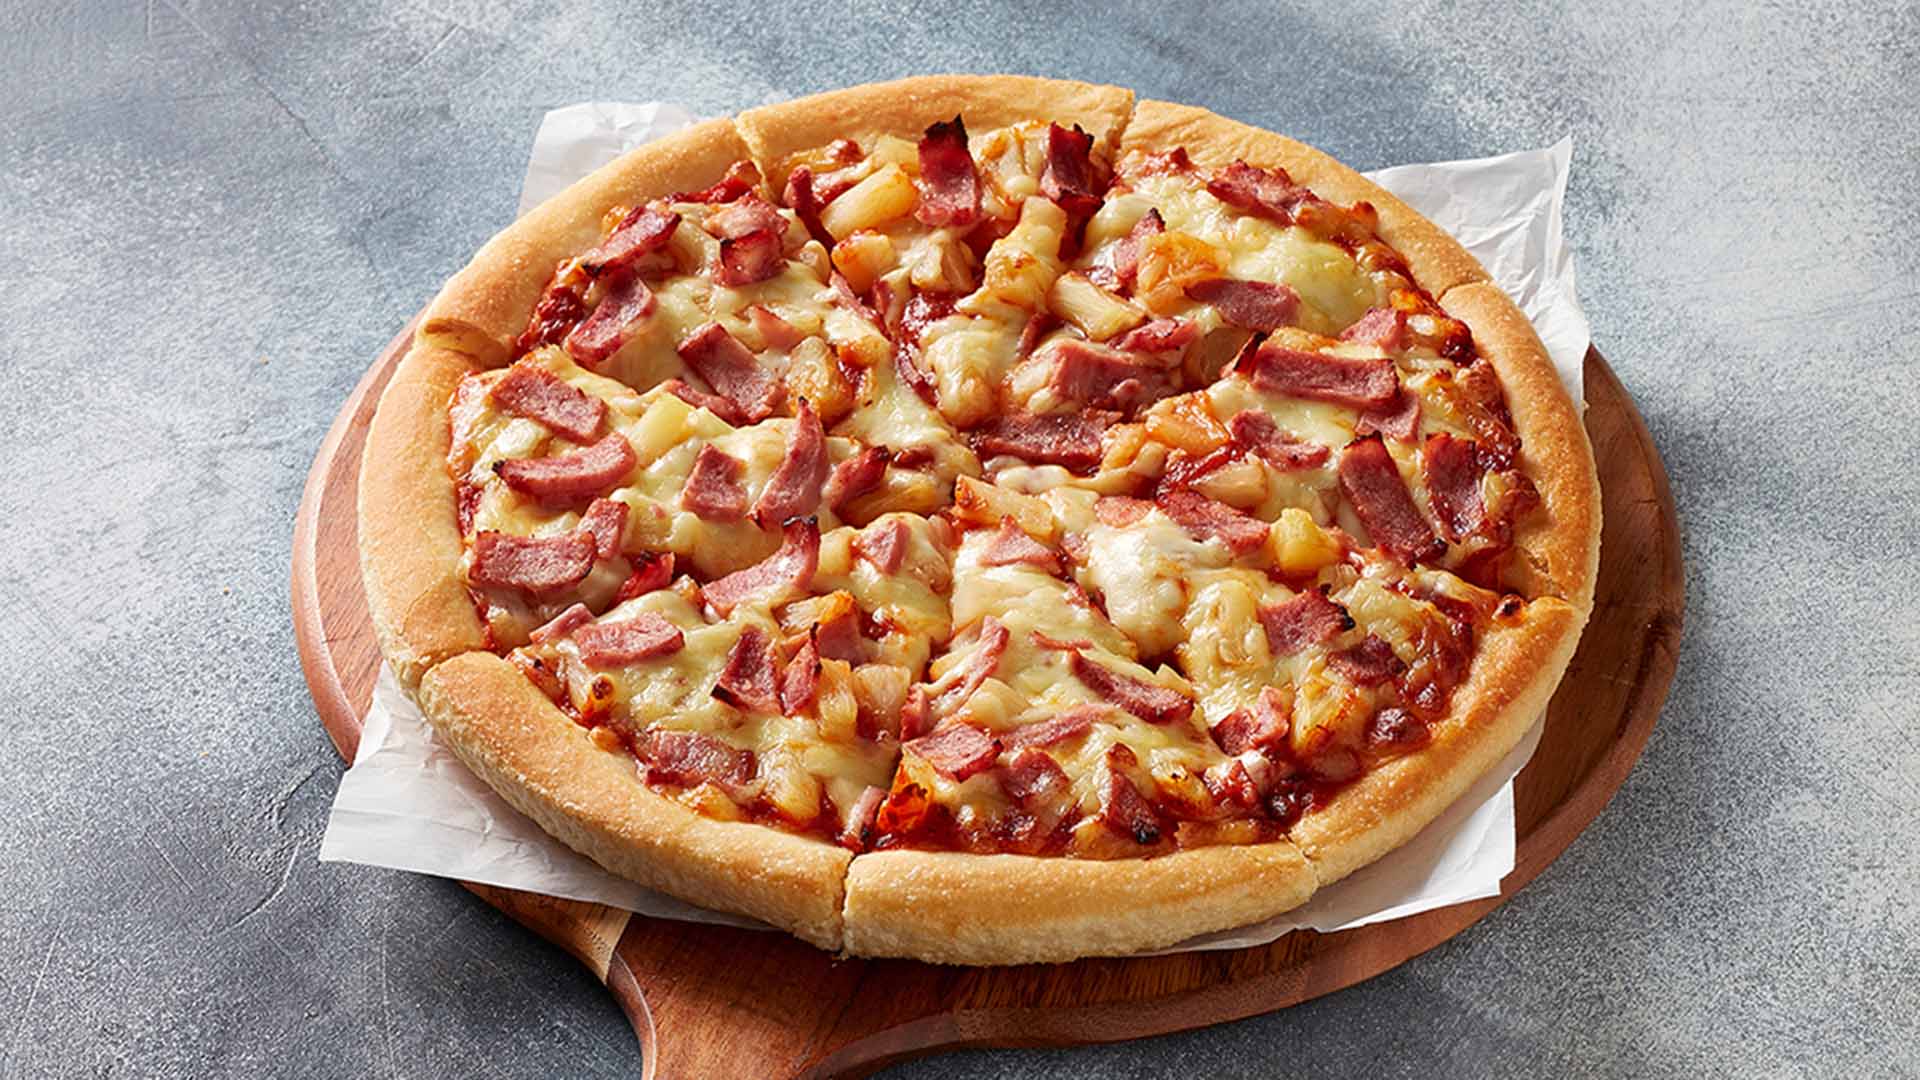 Happy Hawaiian Pizza Day! Celebrate with a delicious Hawaiian